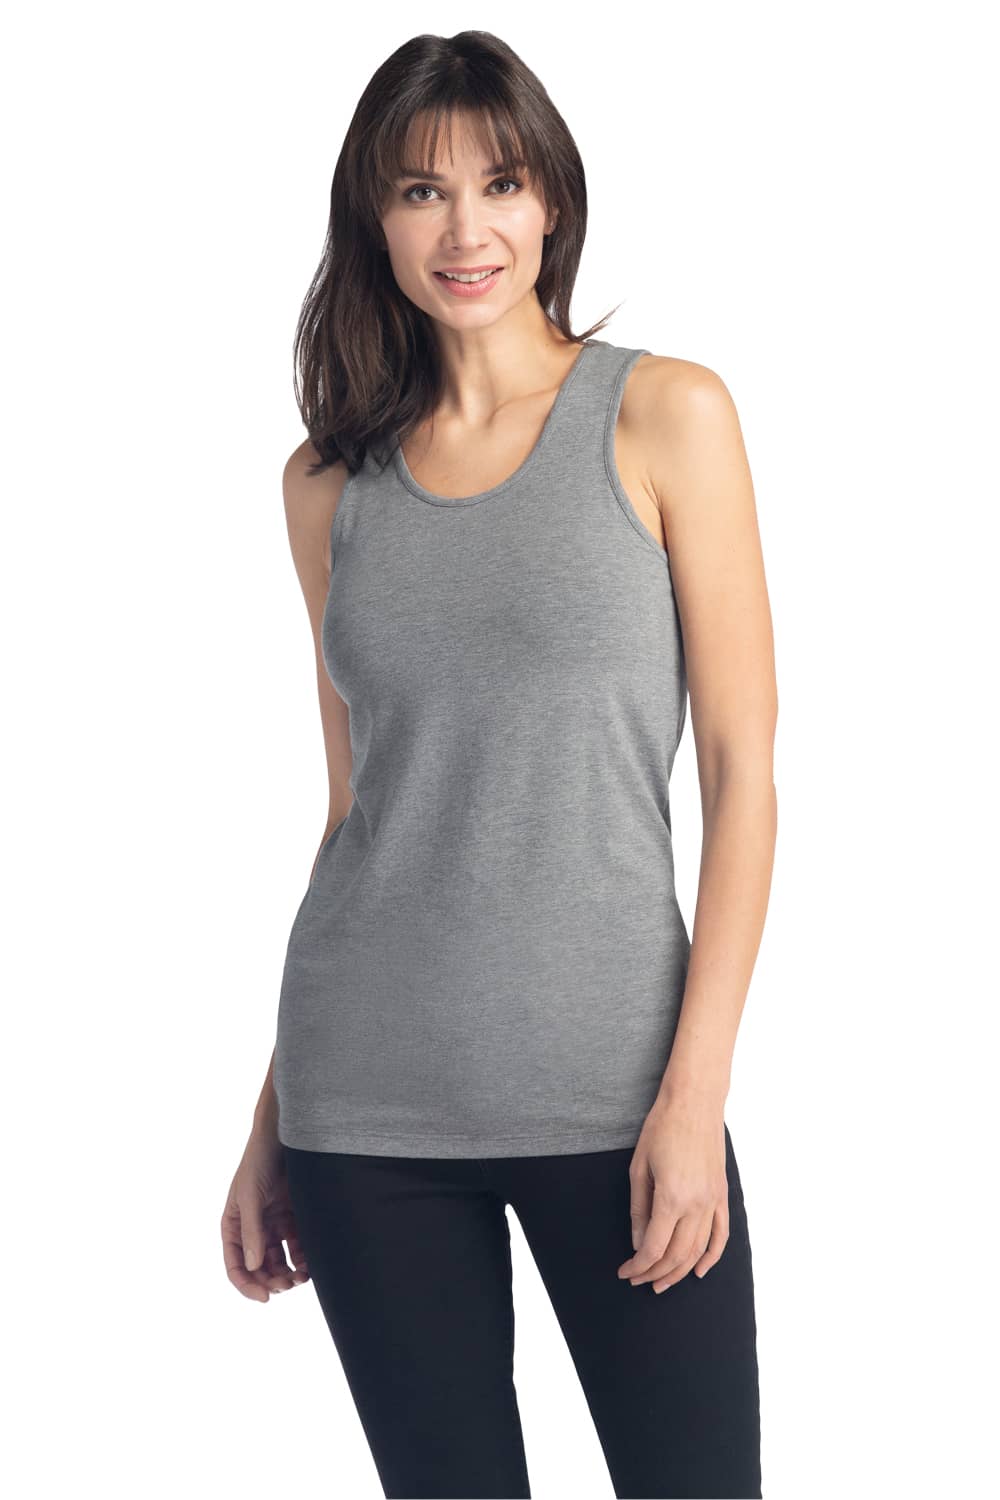 Woman wearing gray Anvil 37PVL tank top • E-commerce Tank Top